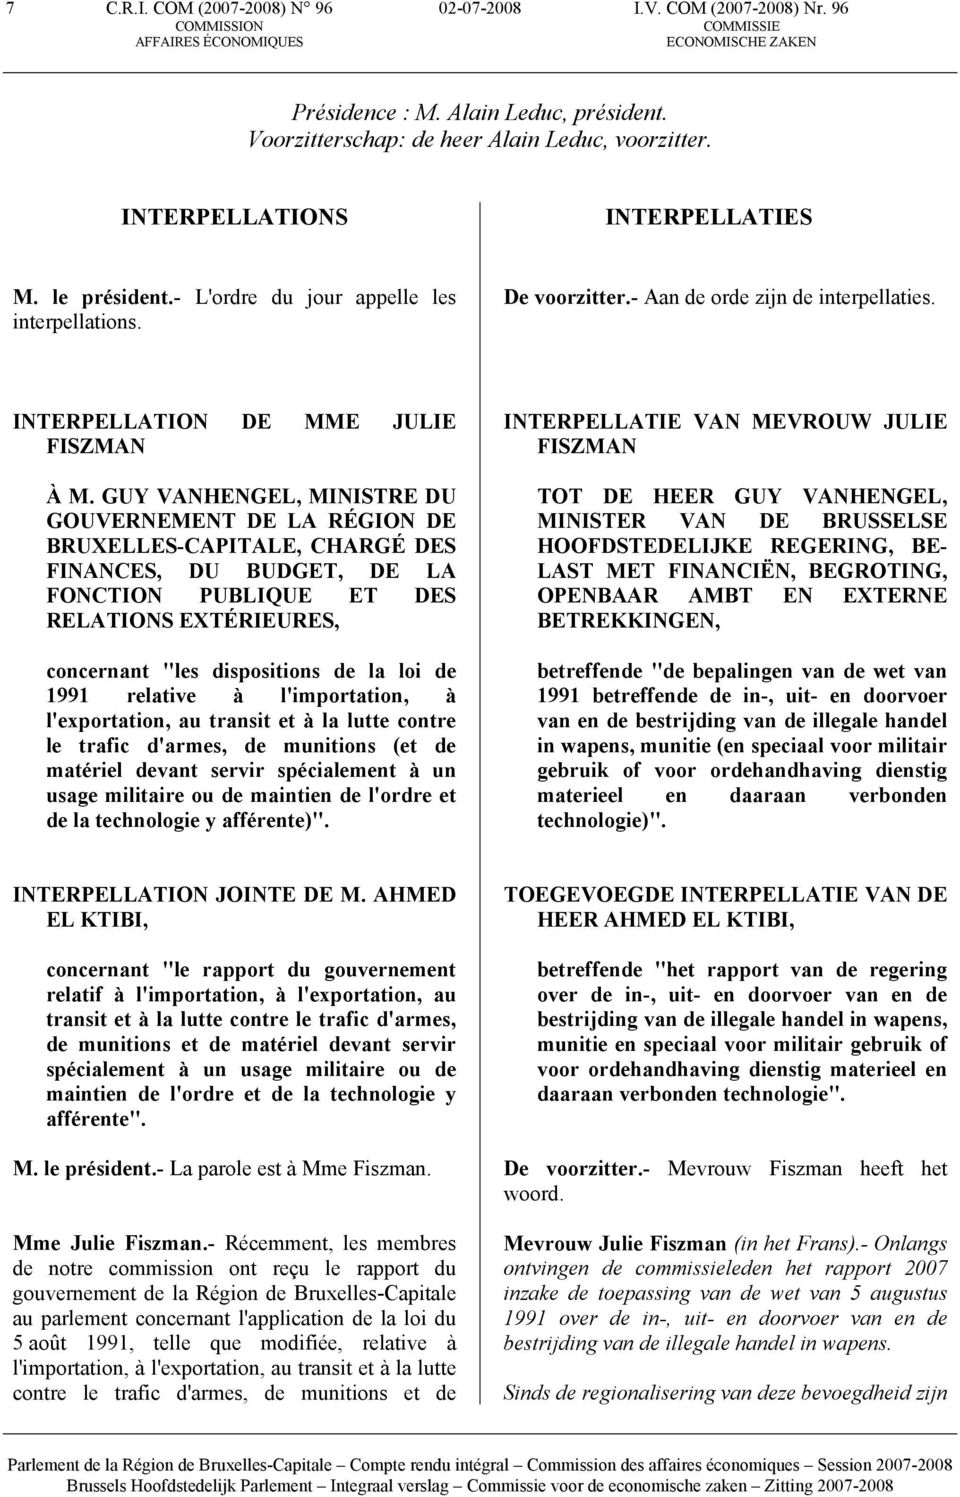 GUY VANHENGEL, MINISTRE DU GOUVERNEMENT DE LA RÉGION DE BRUXELLES-CAPITALE, CHARGÉ DES FINANCES, DU BUDGET, DE LA FONCTION PUBLIQUE ET DES RELATIONS EXTÉRIEURES, concernant "les dispositions de la